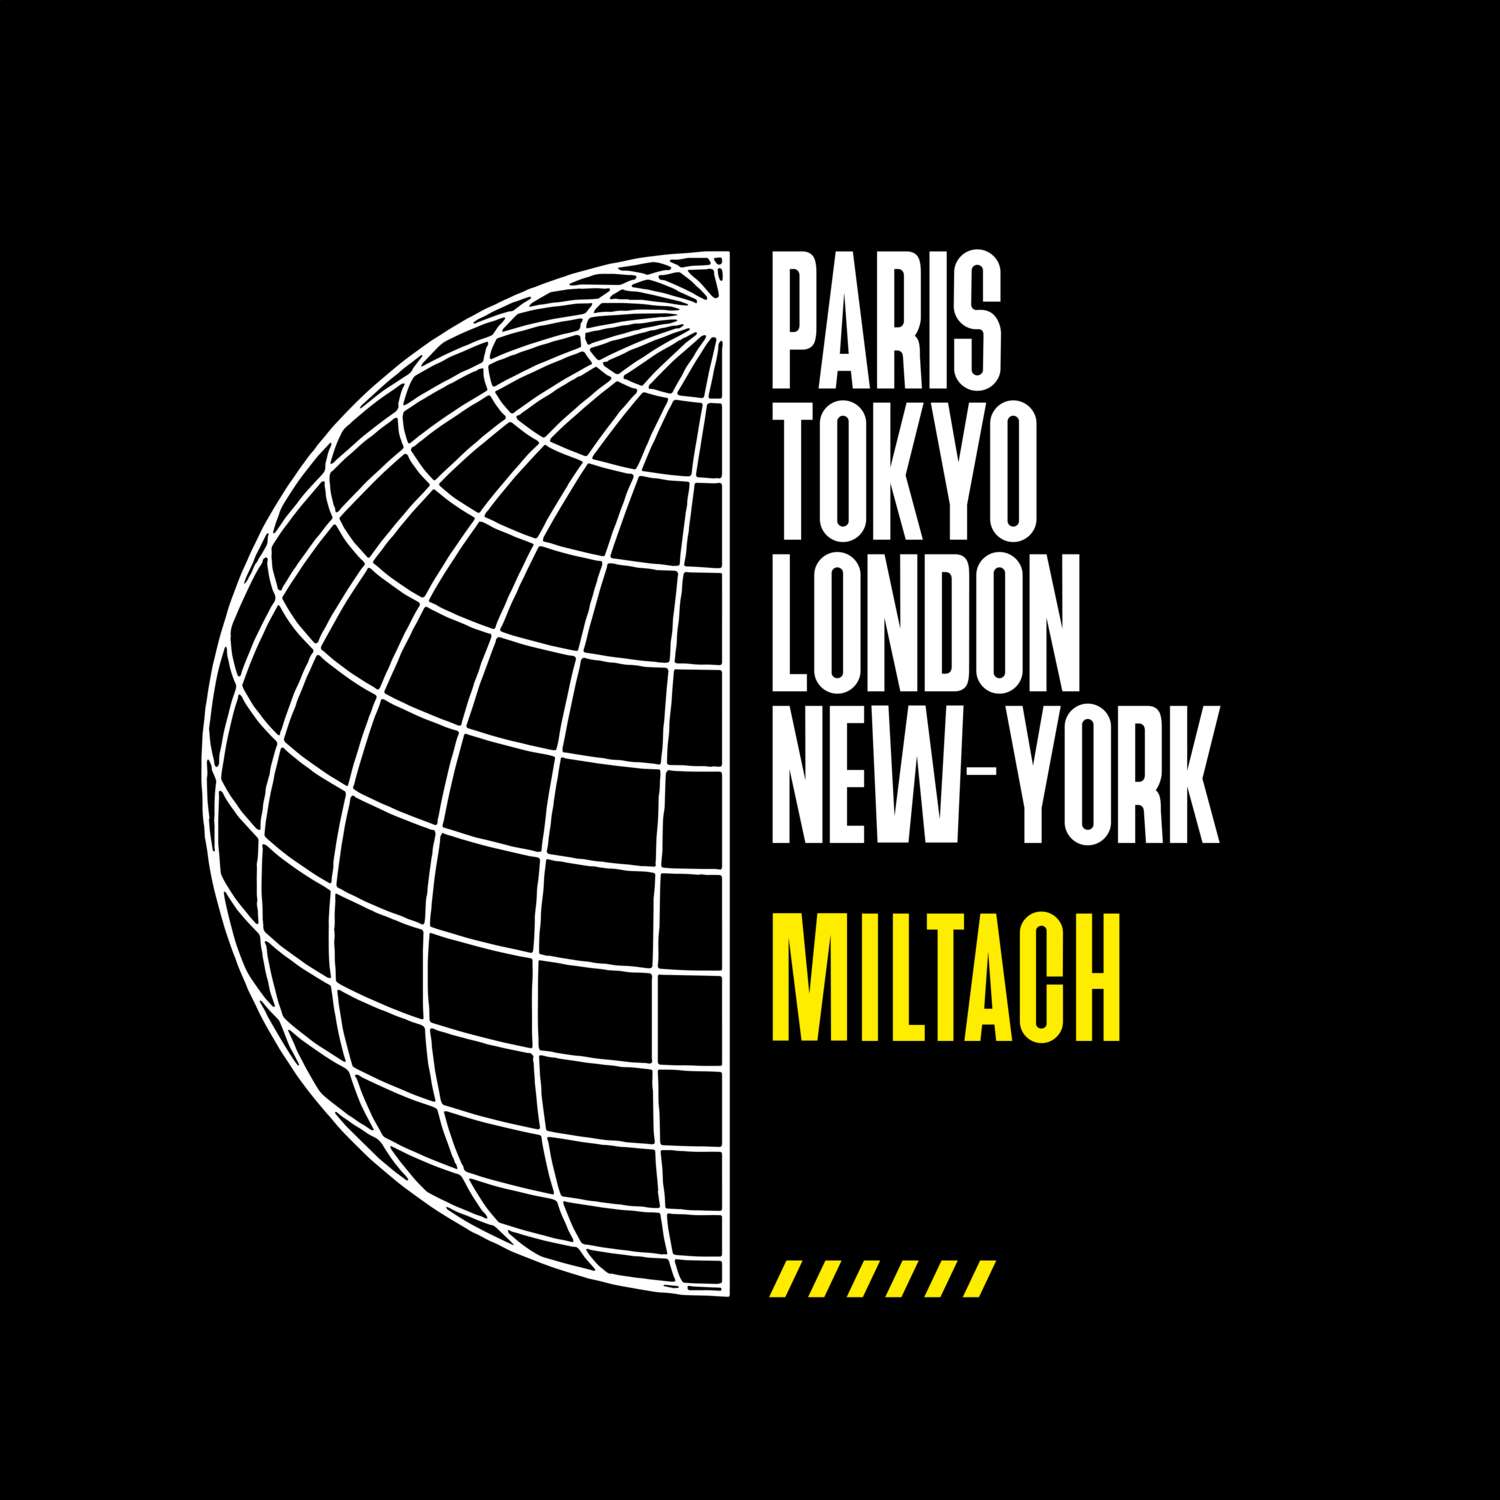 Miltach T-Shirt »Paris Tokyo London«